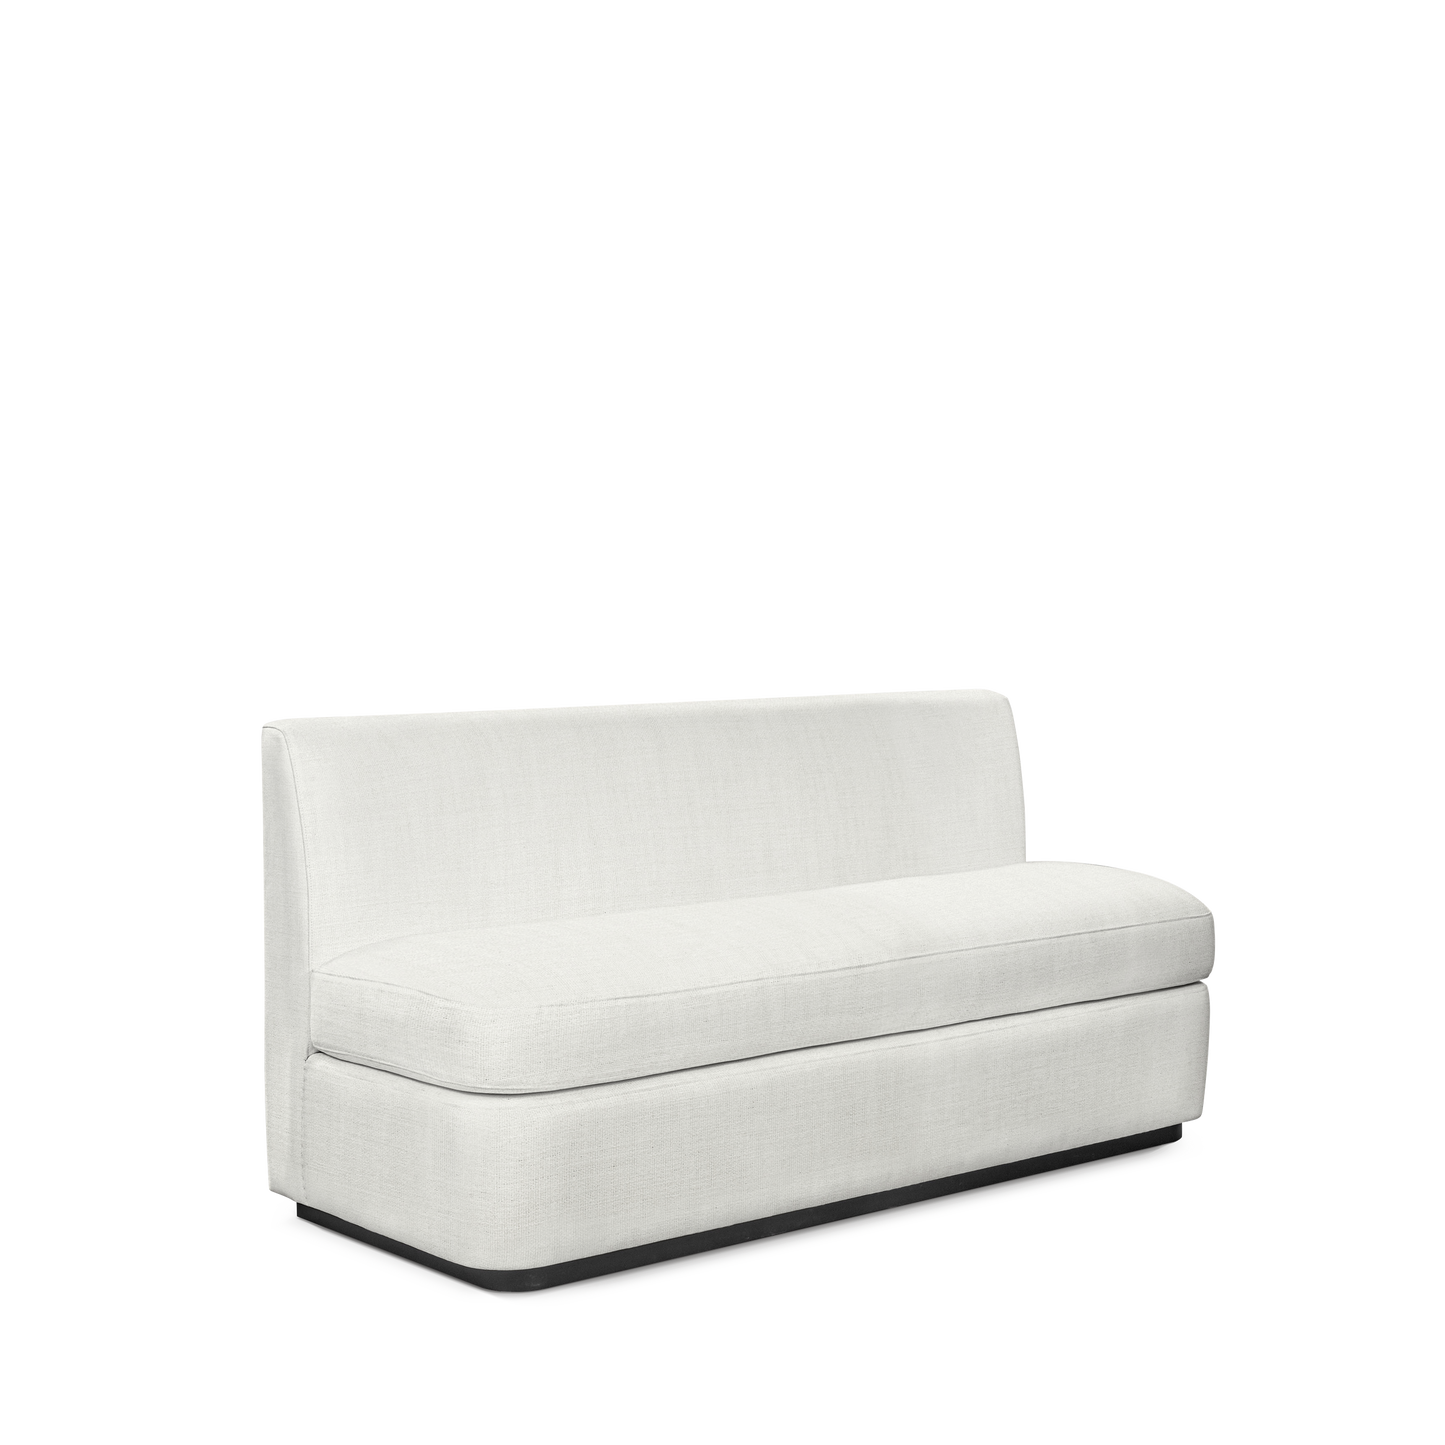  CALMA KITCHEN 3-seater sofa with Rocco white textile